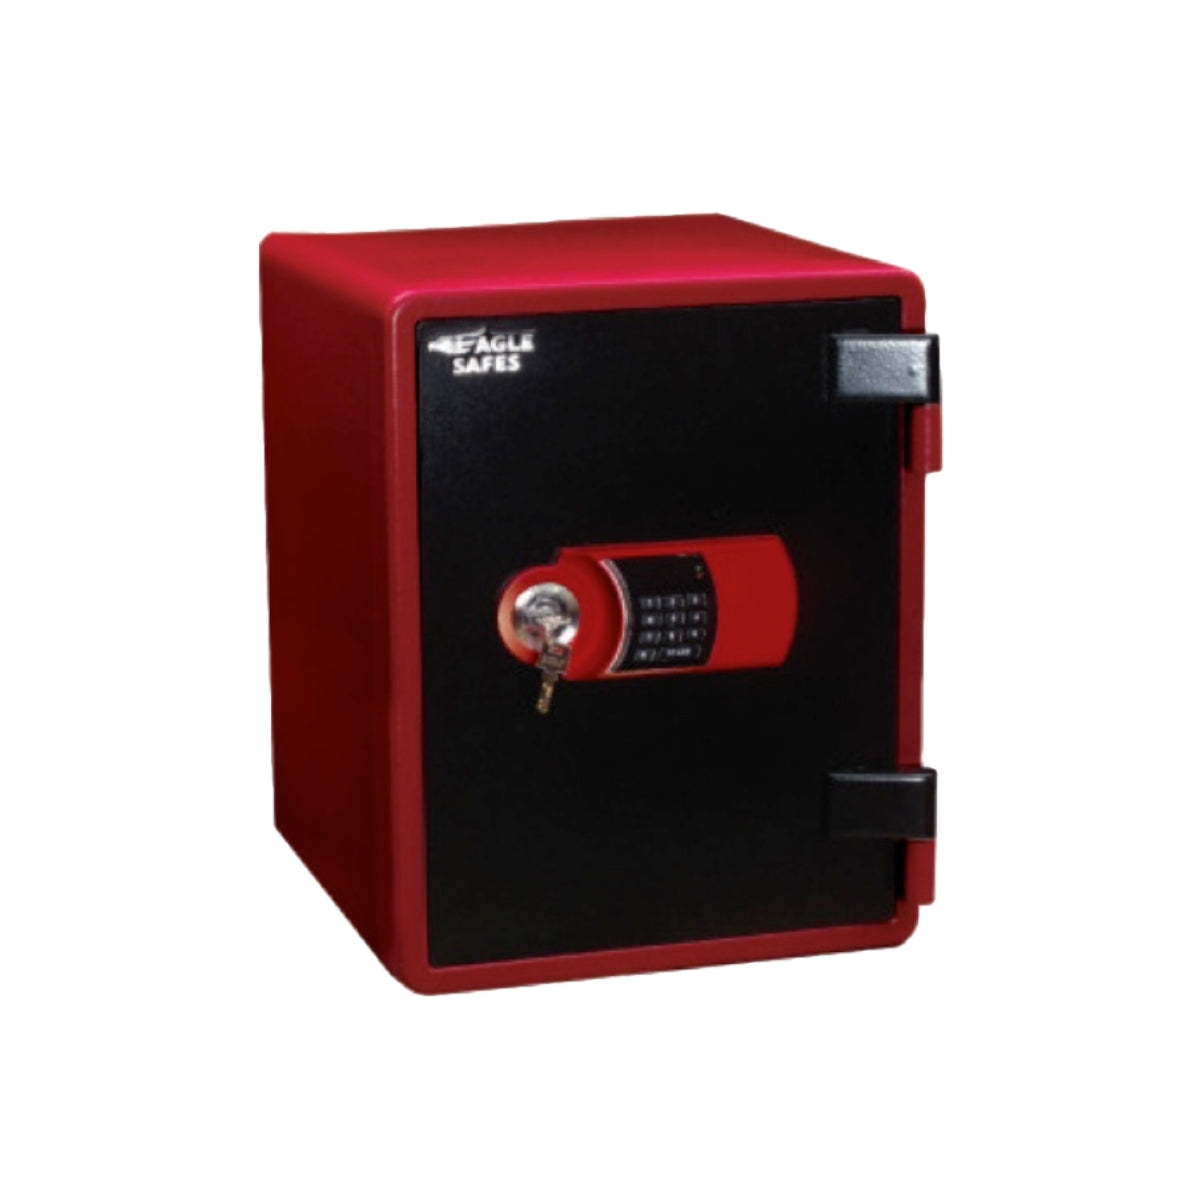 Eagle YES-031DK Fire Resistant Safe, Digital & Key Lock, Red